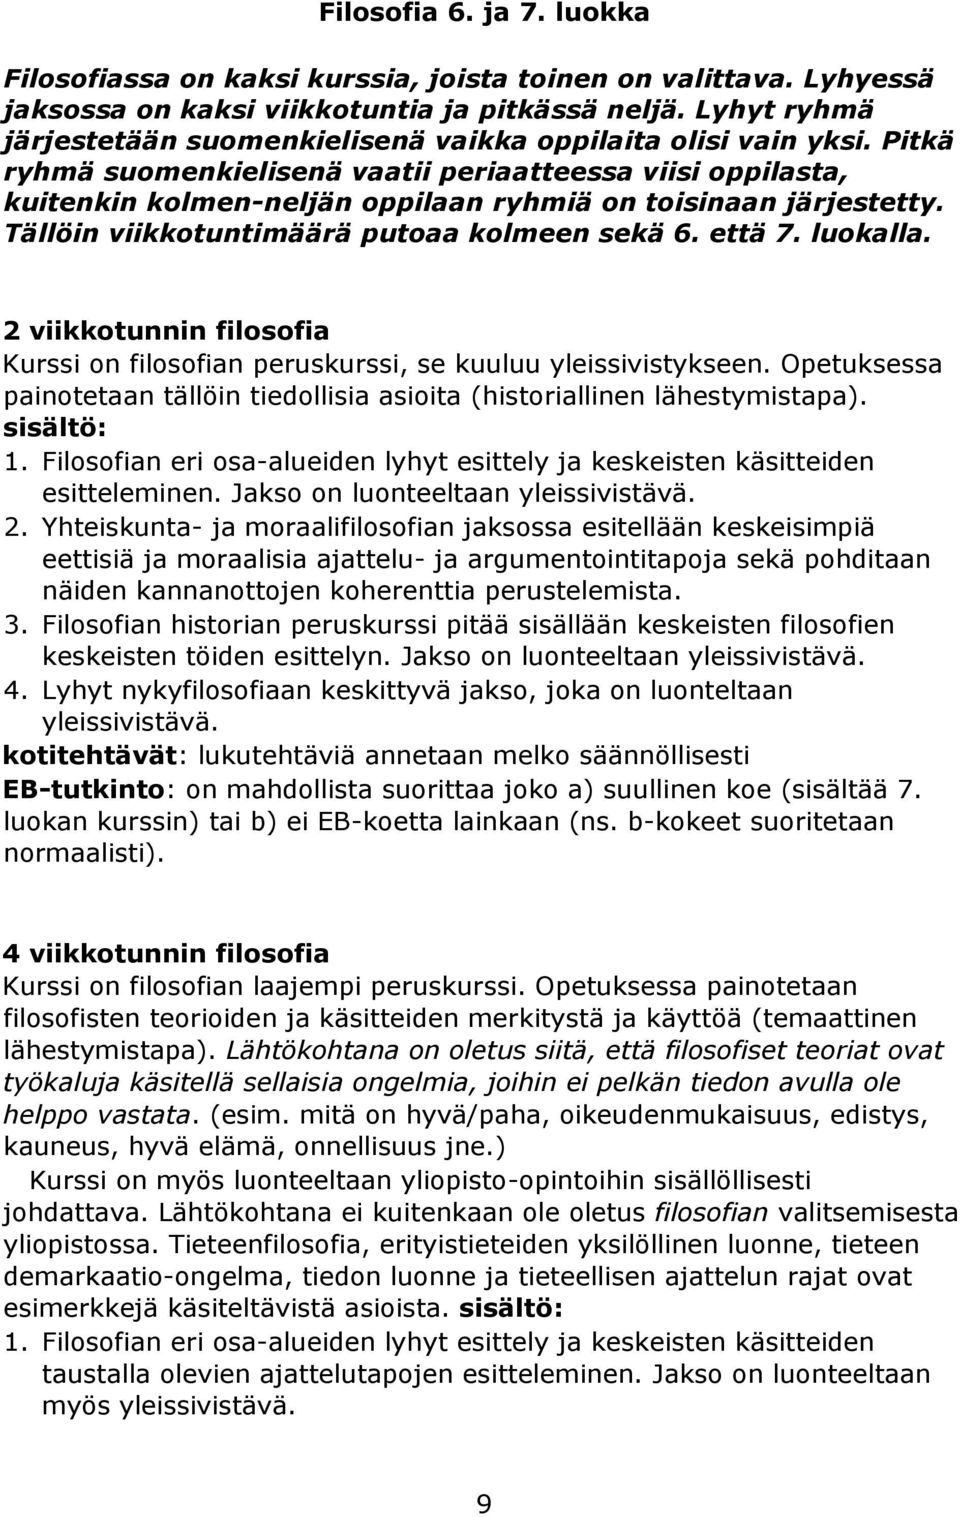 Pitkä ryhmä suomenkielisenä vaatii periaatteessa viisi oppilasta, kuitenkin kolmen-neljän oppilaan ryhmiä on toisinaan järjestetty. Tällöin viikkotuntimäärä putoaa kolmeen sekä 6. että 7. luokalla.